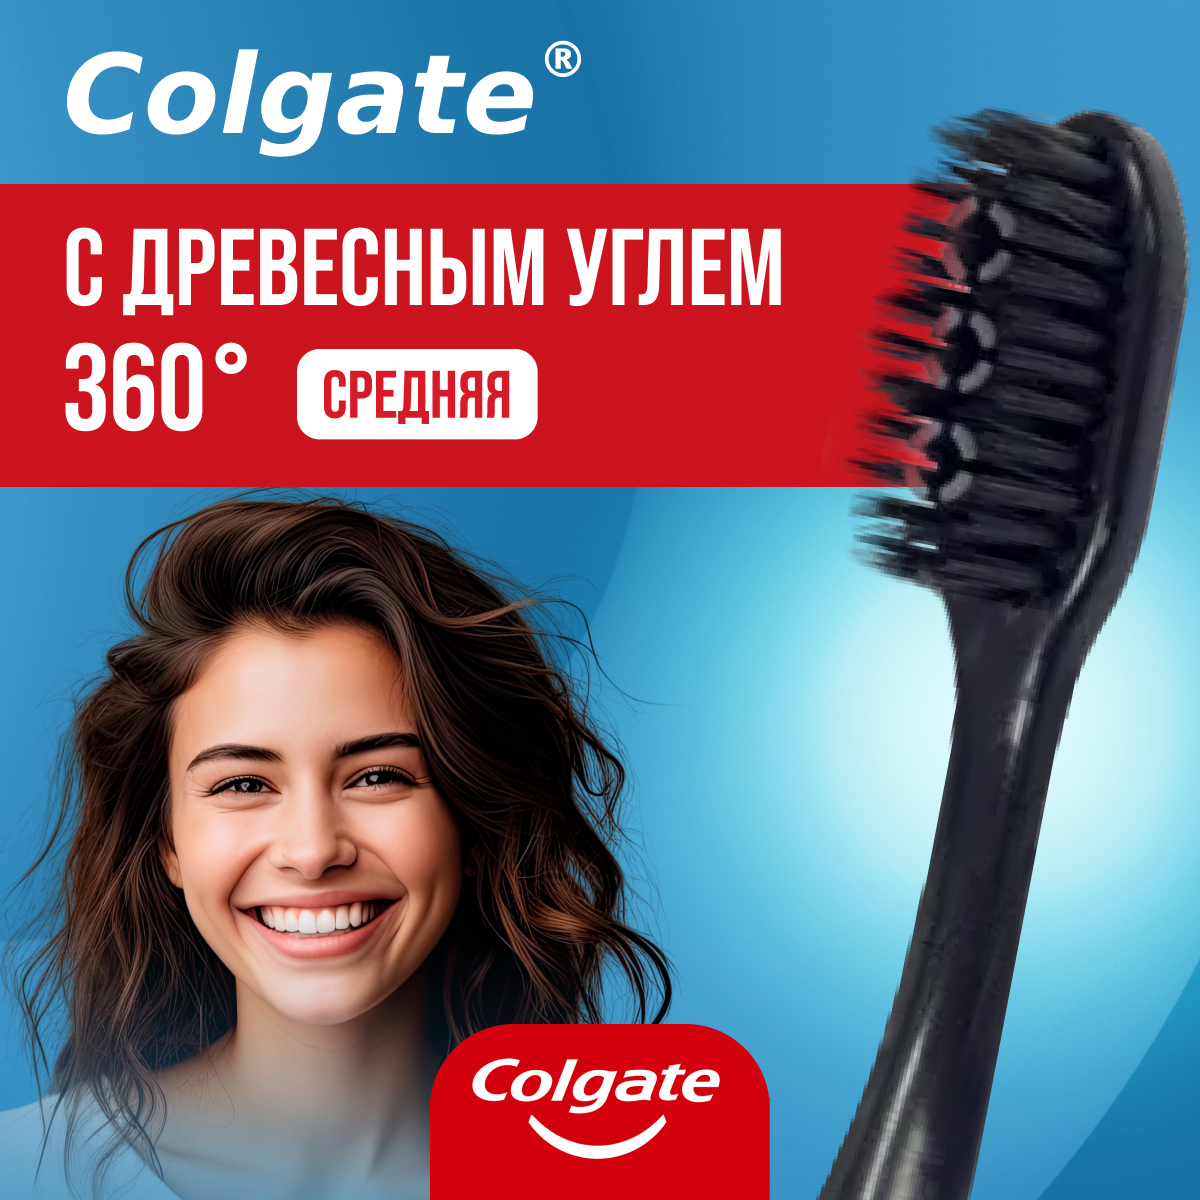 Зубная щетка Colgate средней жесткости 360 Древесный уголь